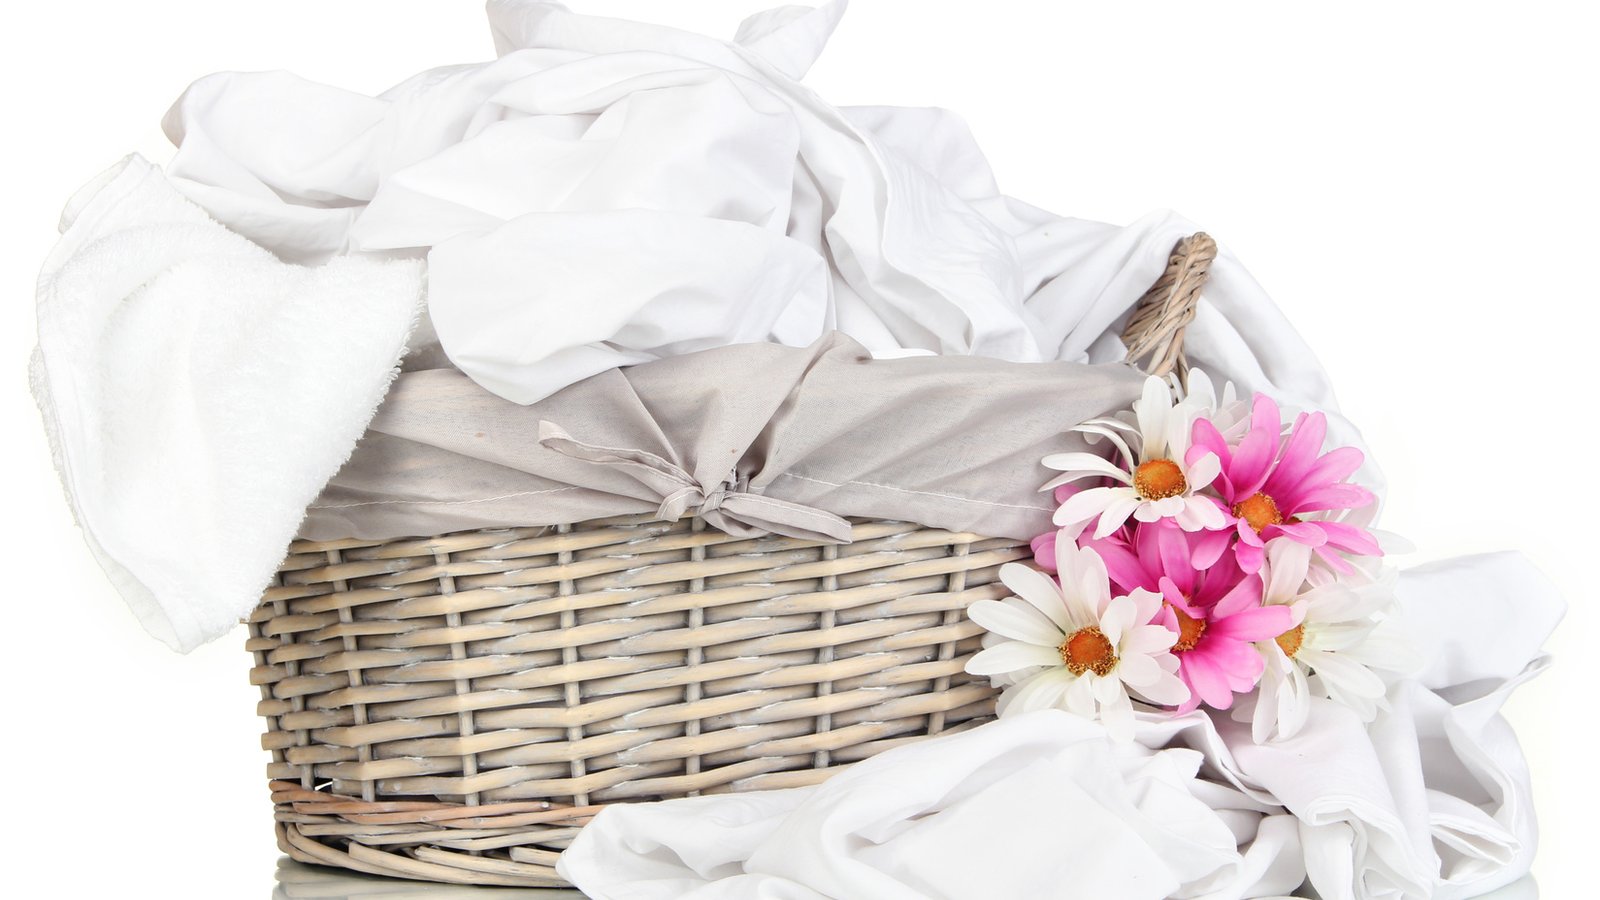 Voici pourquoi vous devez laver vos draps toutes les semaines (et ce qui arrive si vous ne le faites pas)!